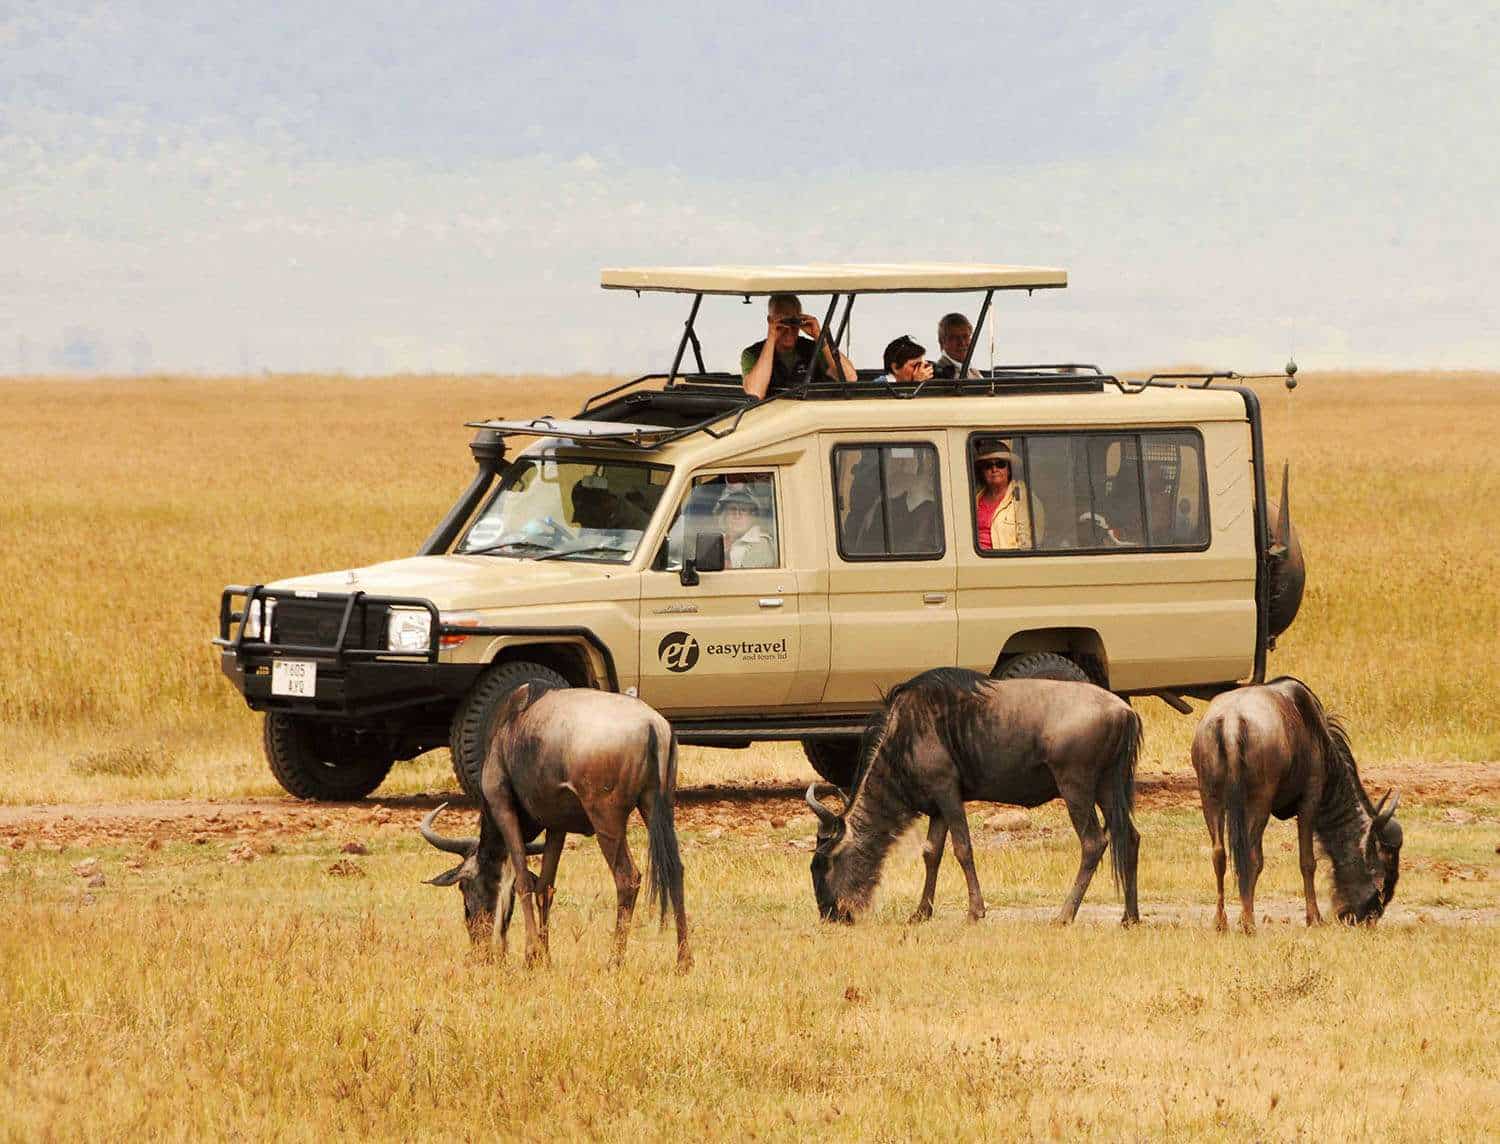 wildebeest with safari tour